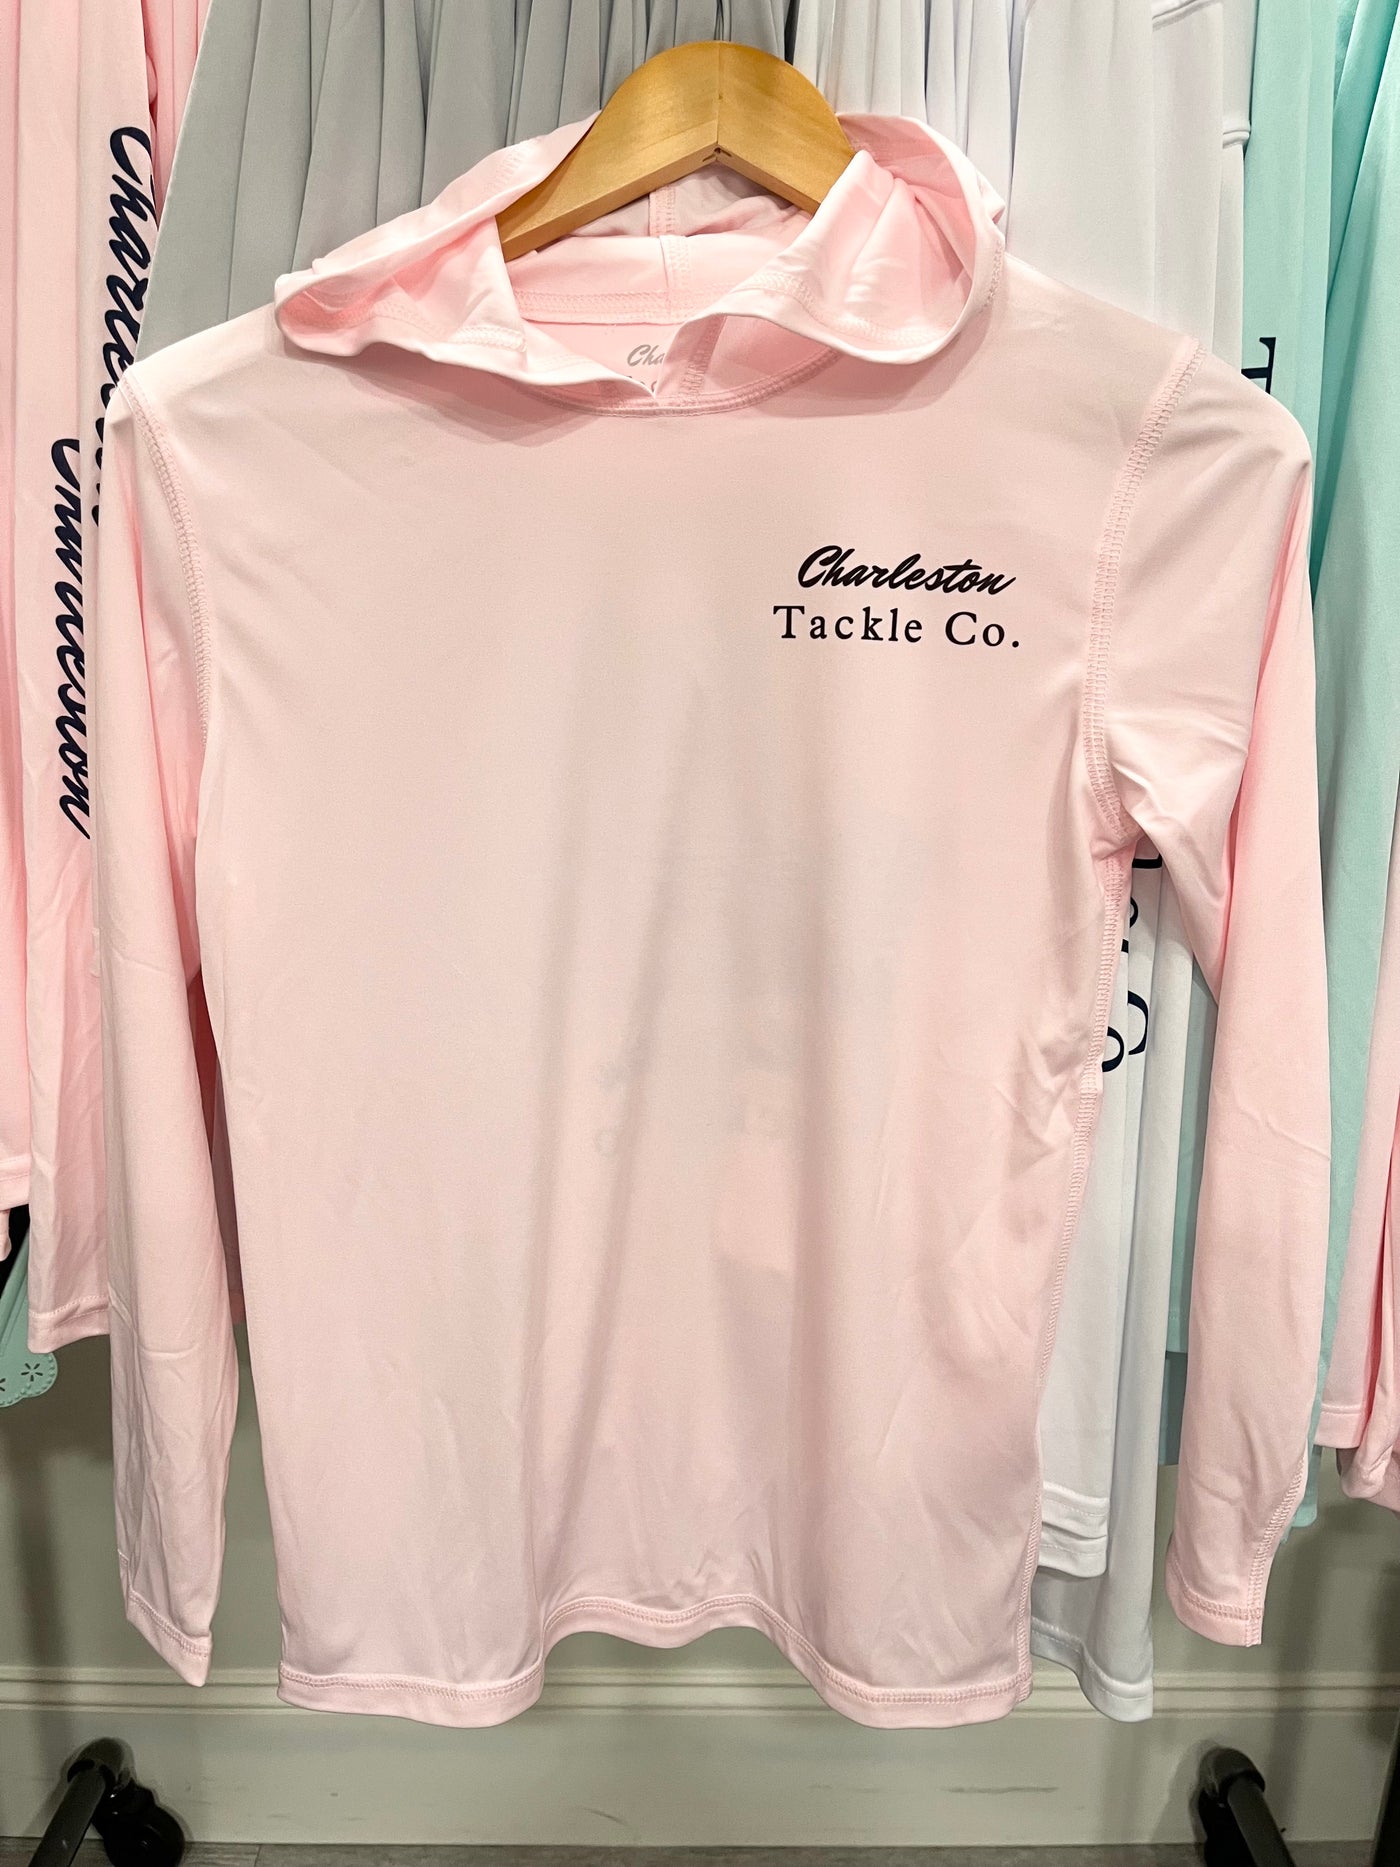 Charleston Tackle Co VIKING Hoodie Long Sleeve PFG Fishing Shirt- Youth-  Pink and Pearl Grey